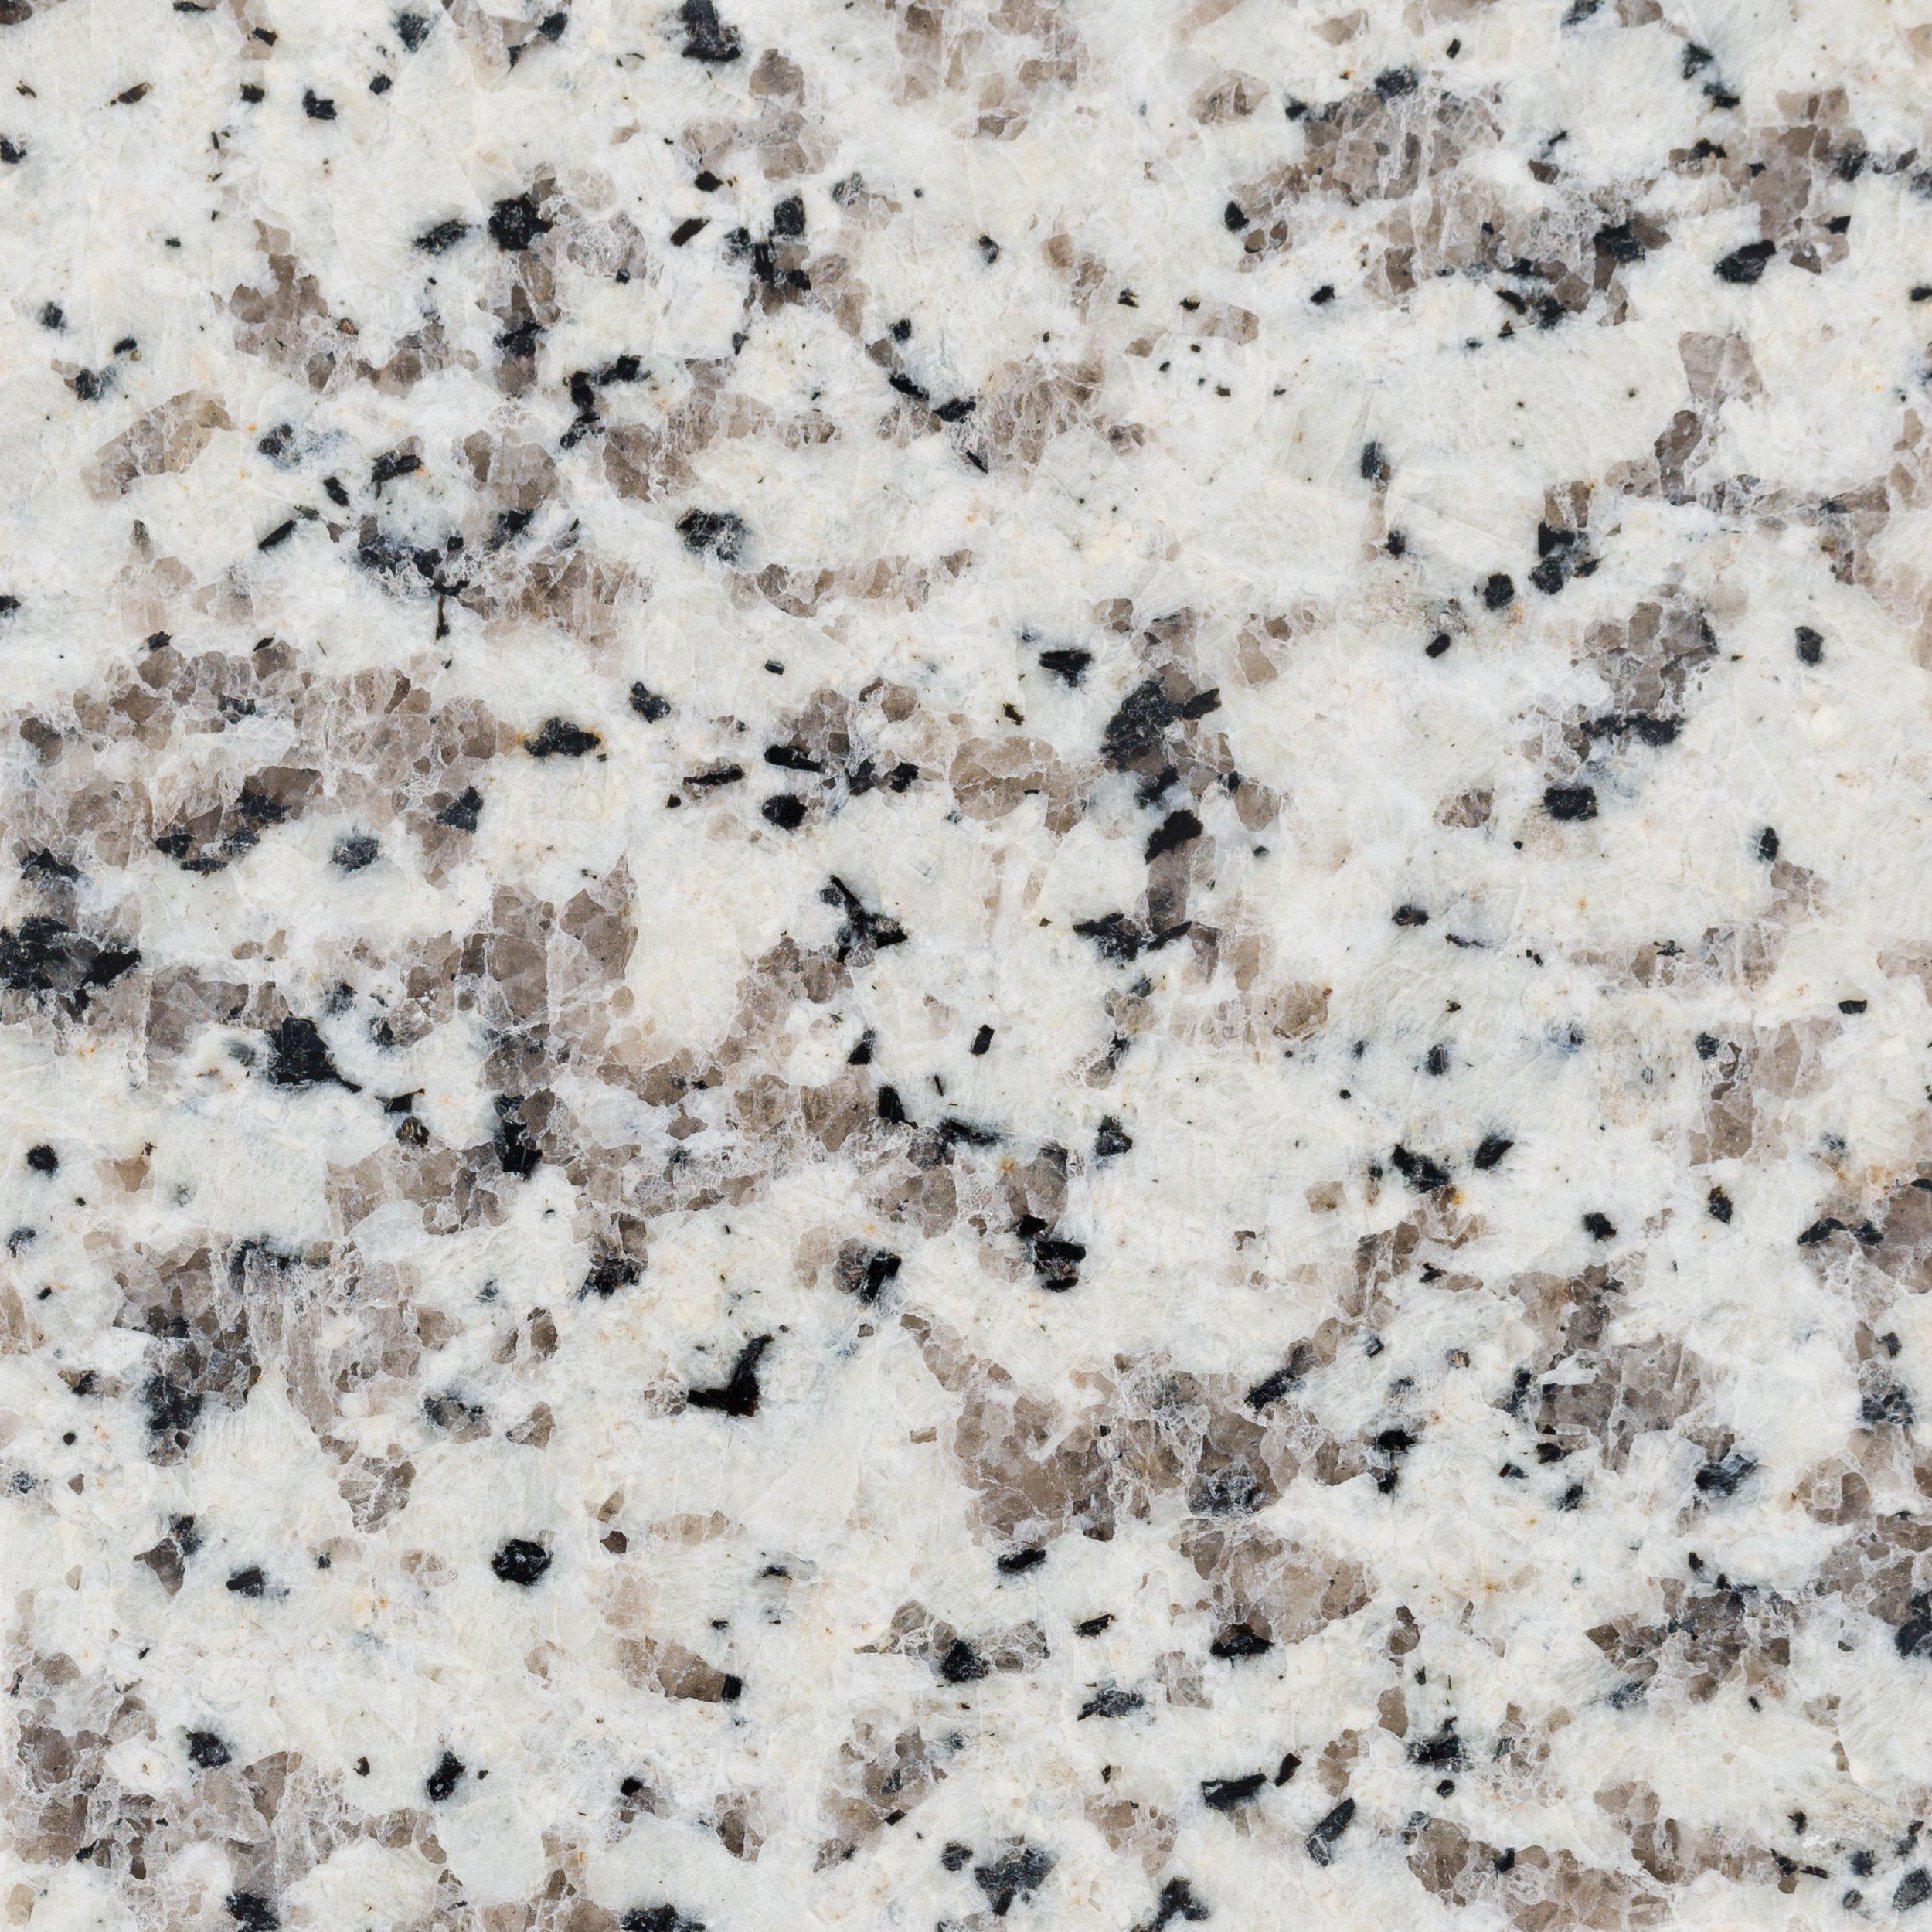 Sample Custom Countertop Willowbrook Granite 4 X 4 100200047